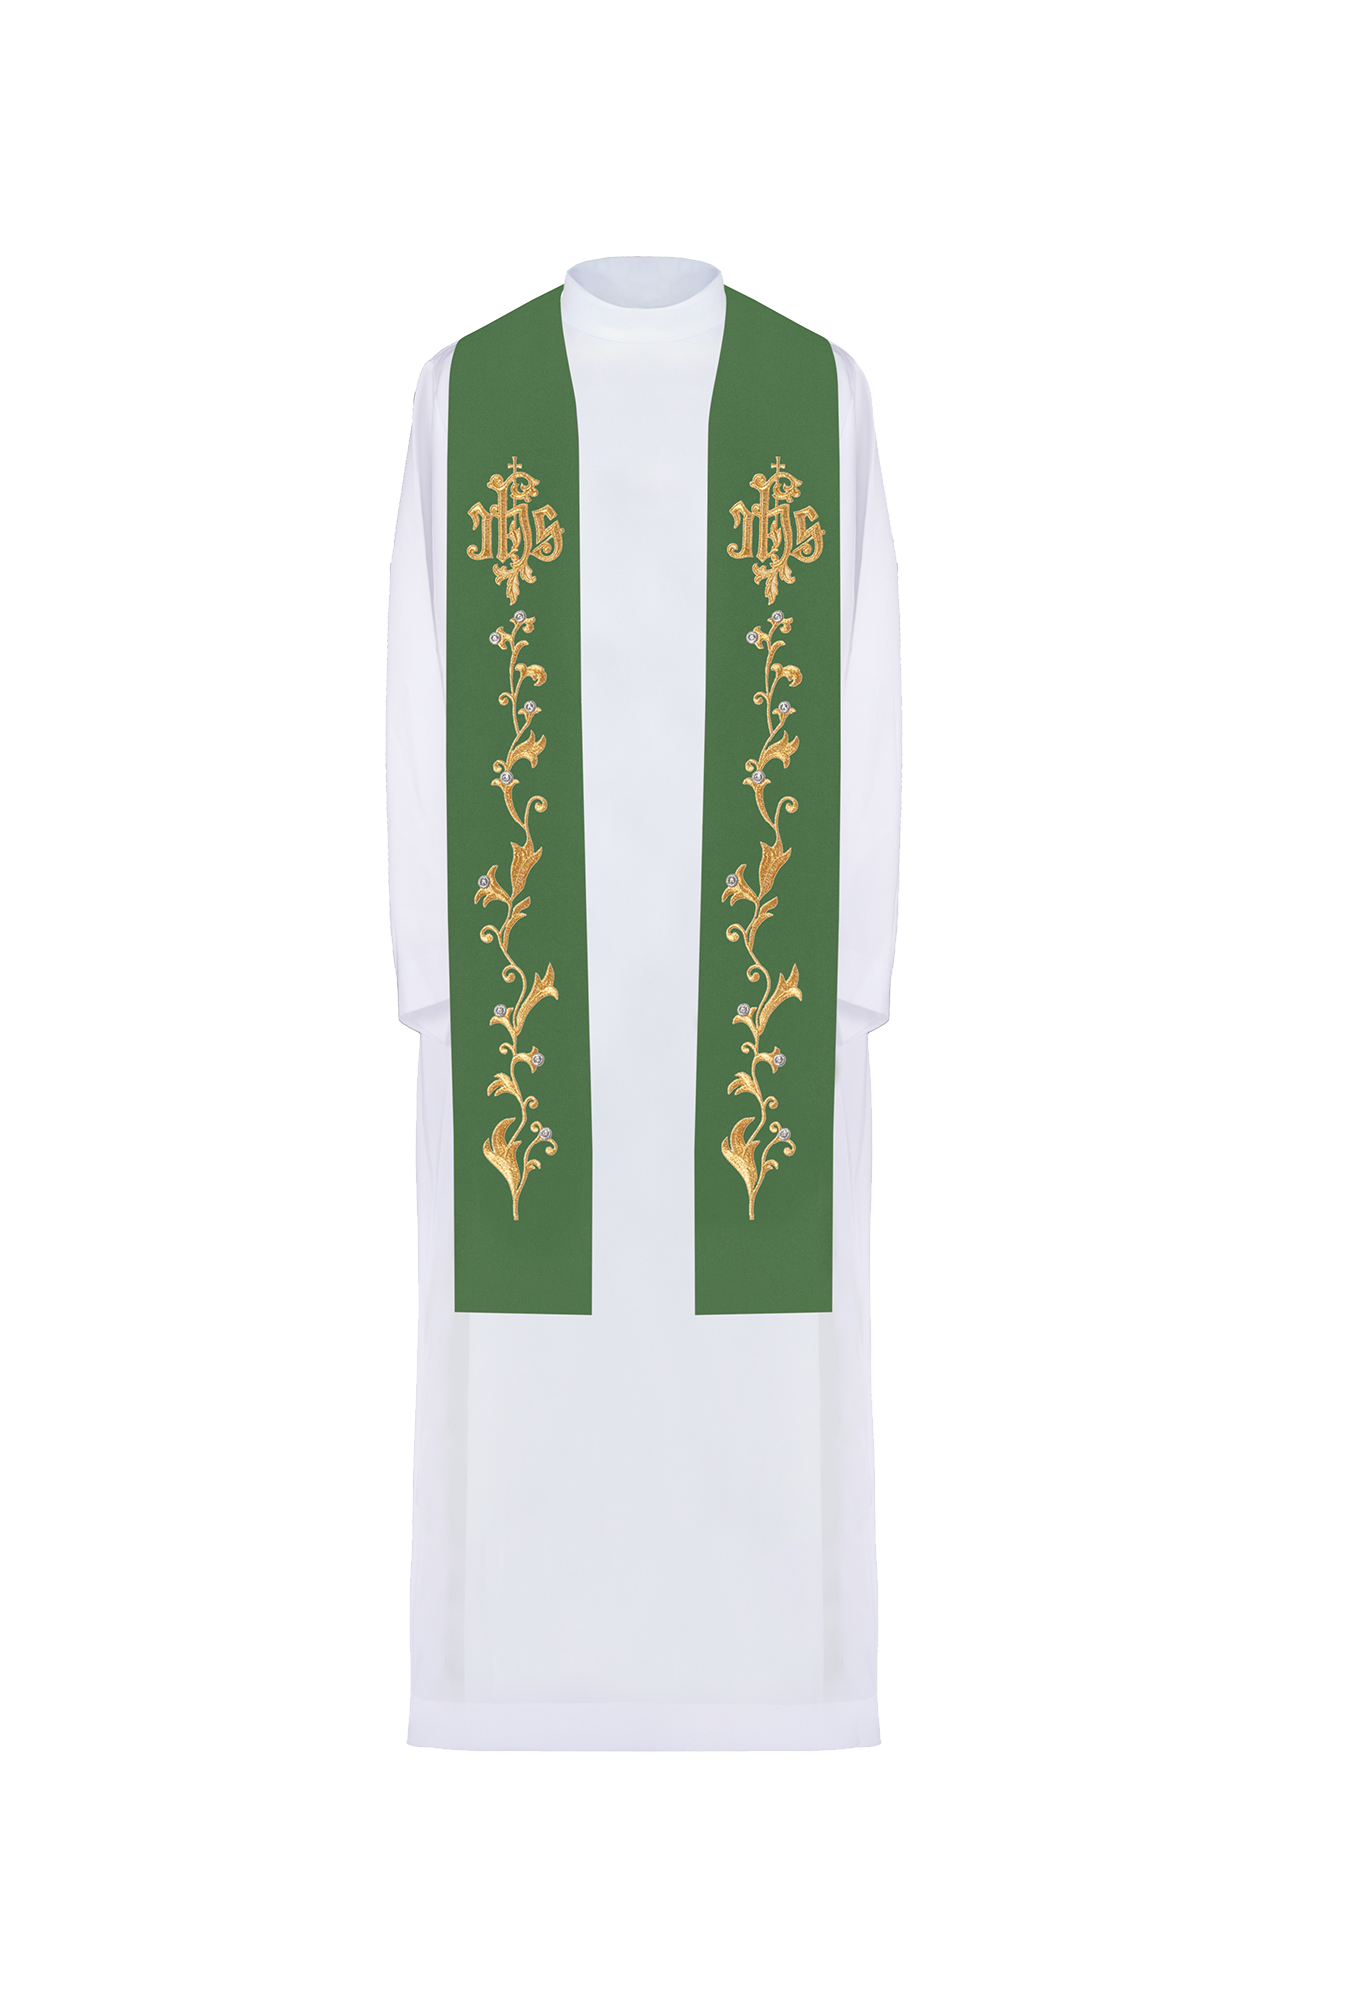 Stuła kapłańska haftowana zielona IHS na krzyżu